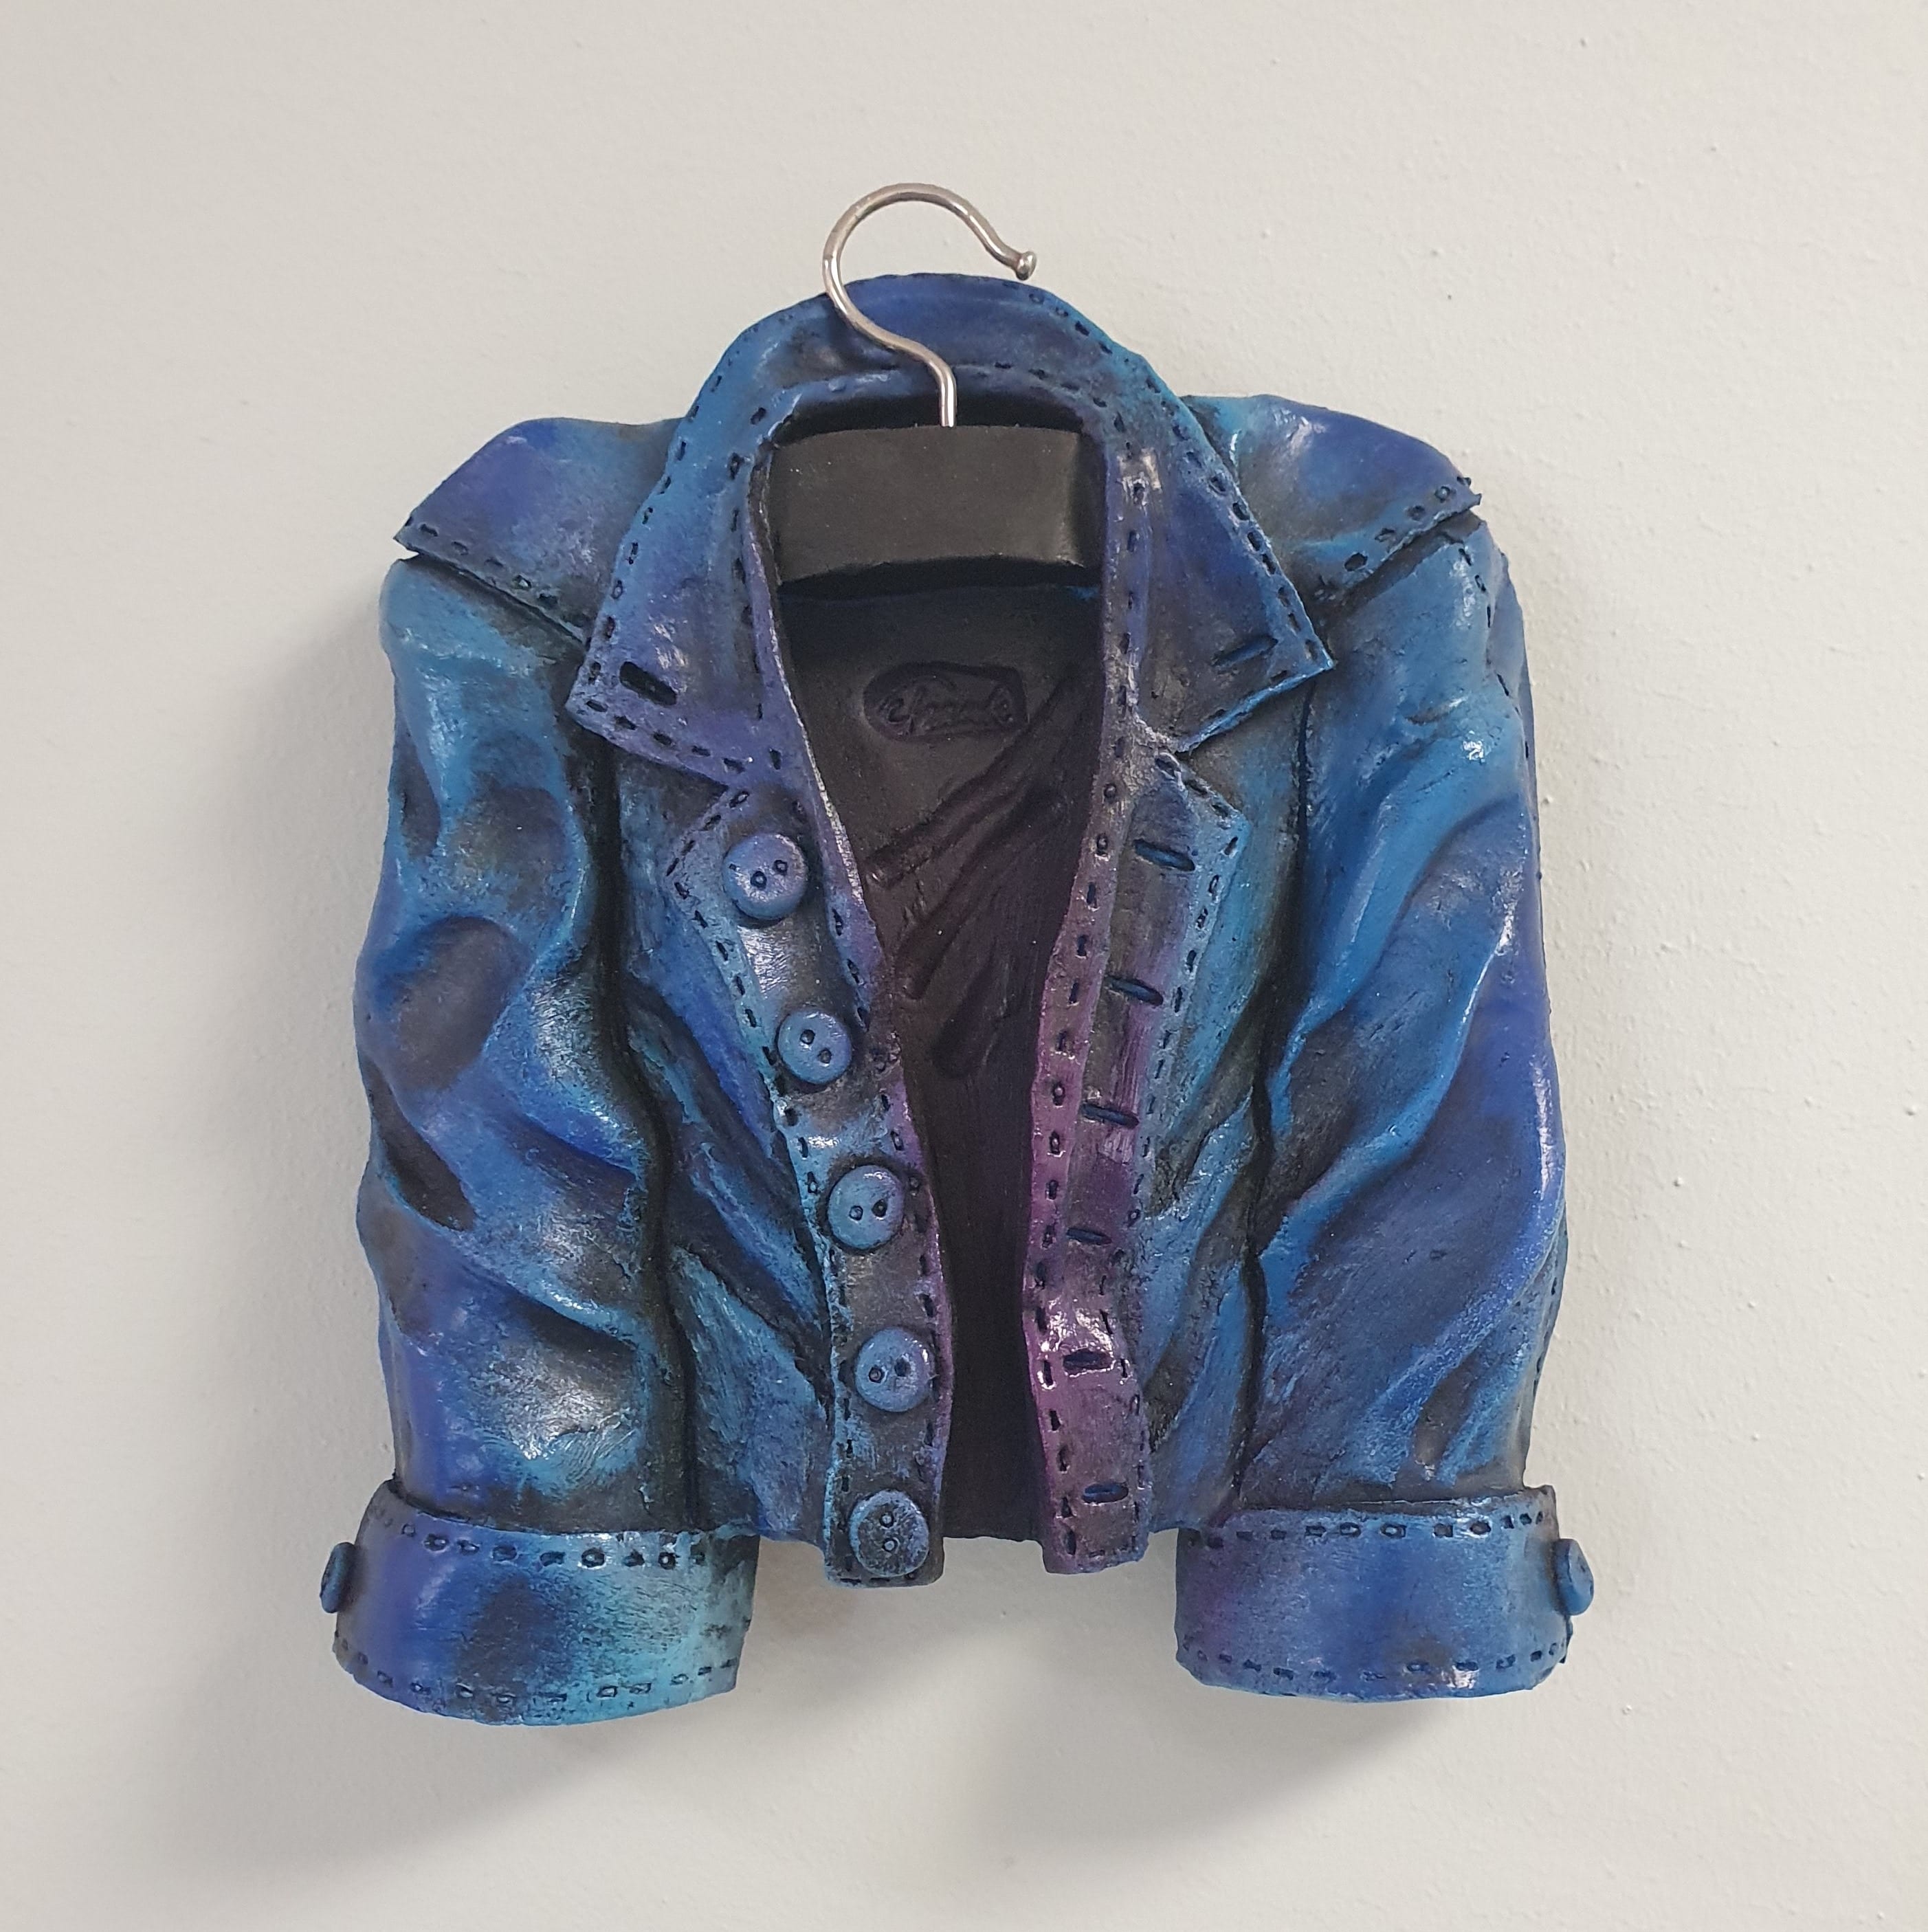 Frank Olsson – Every day jacket köpa konst skulptur.